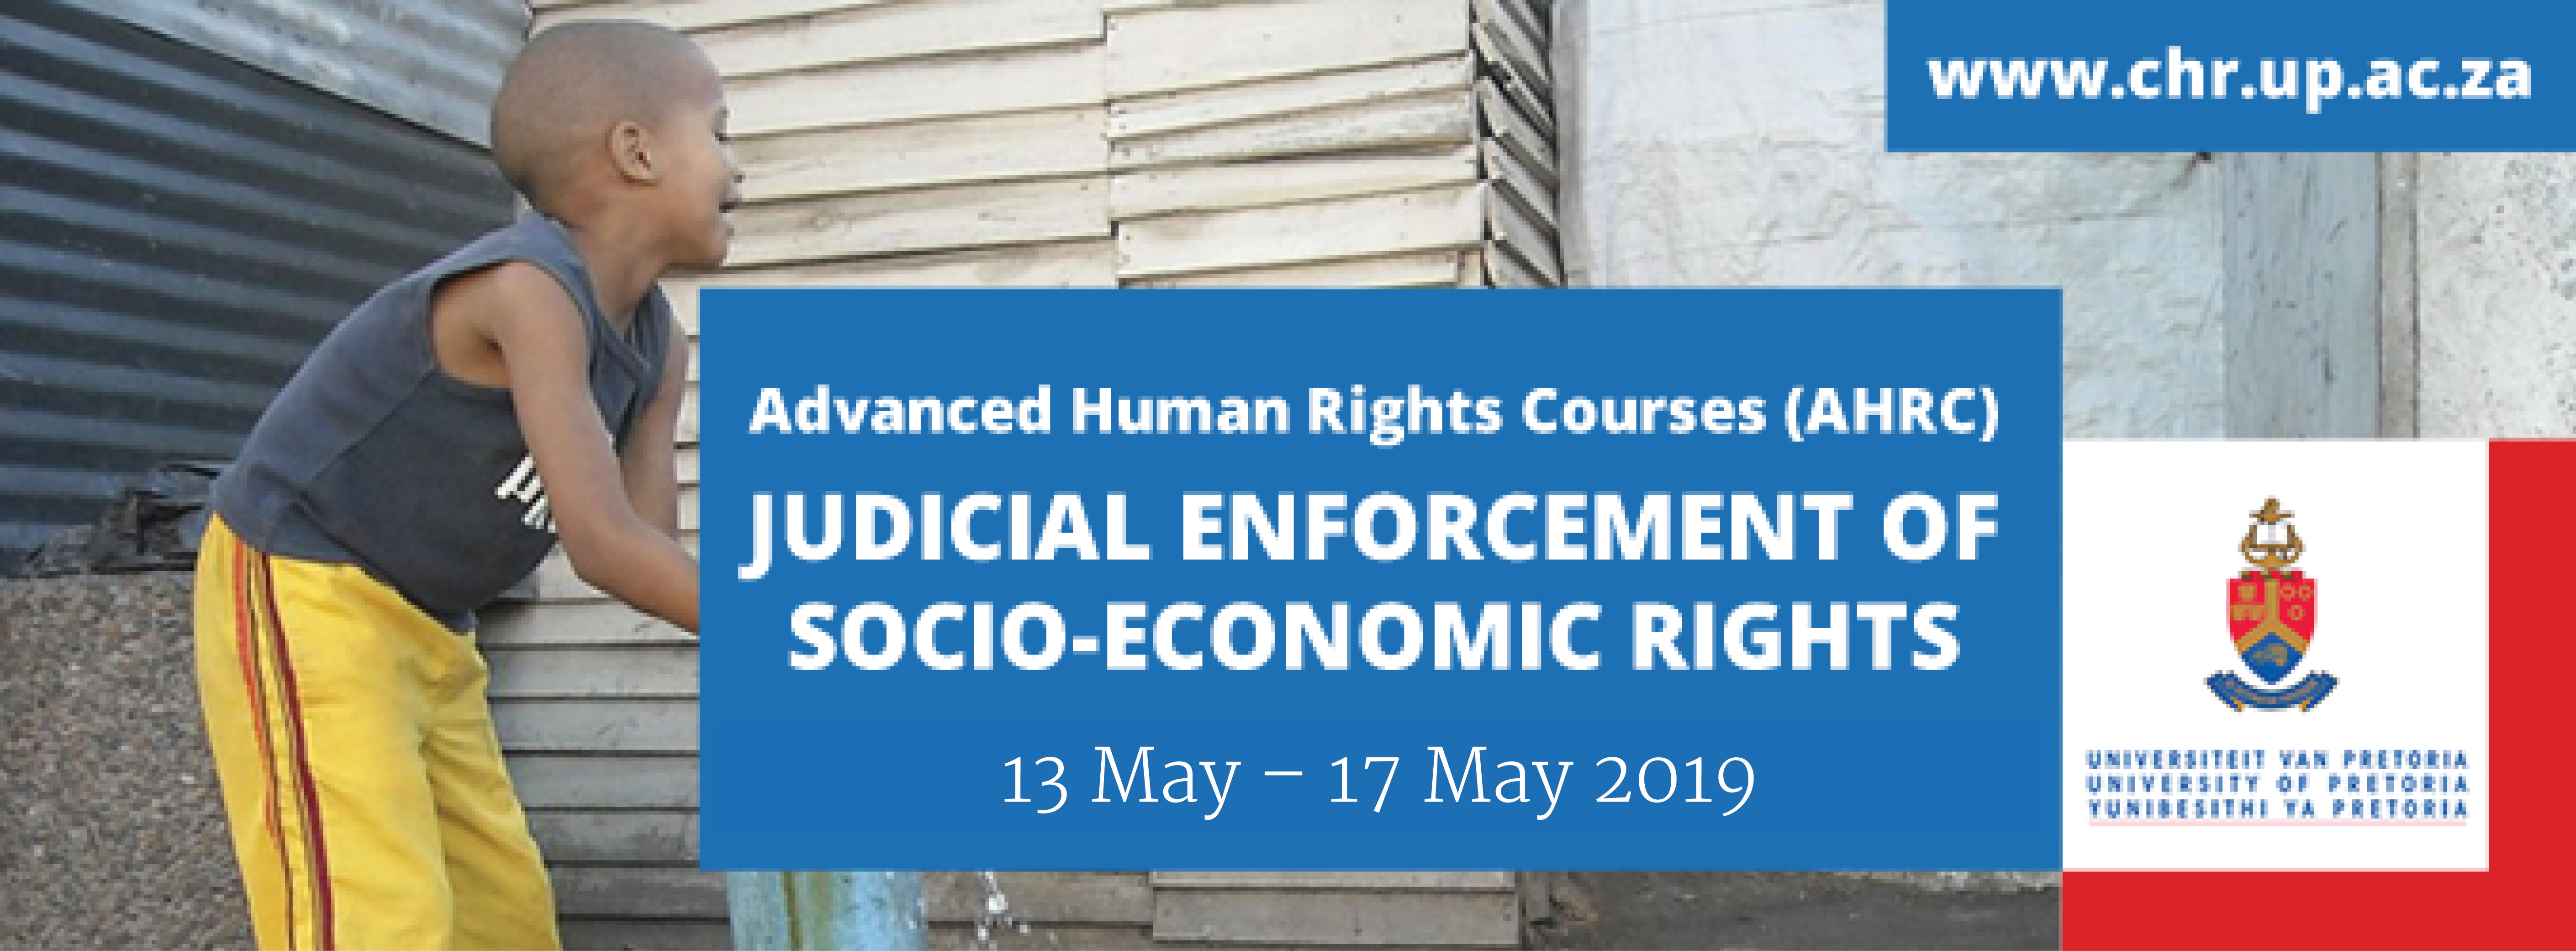 judicial enforcement of socio economic rights